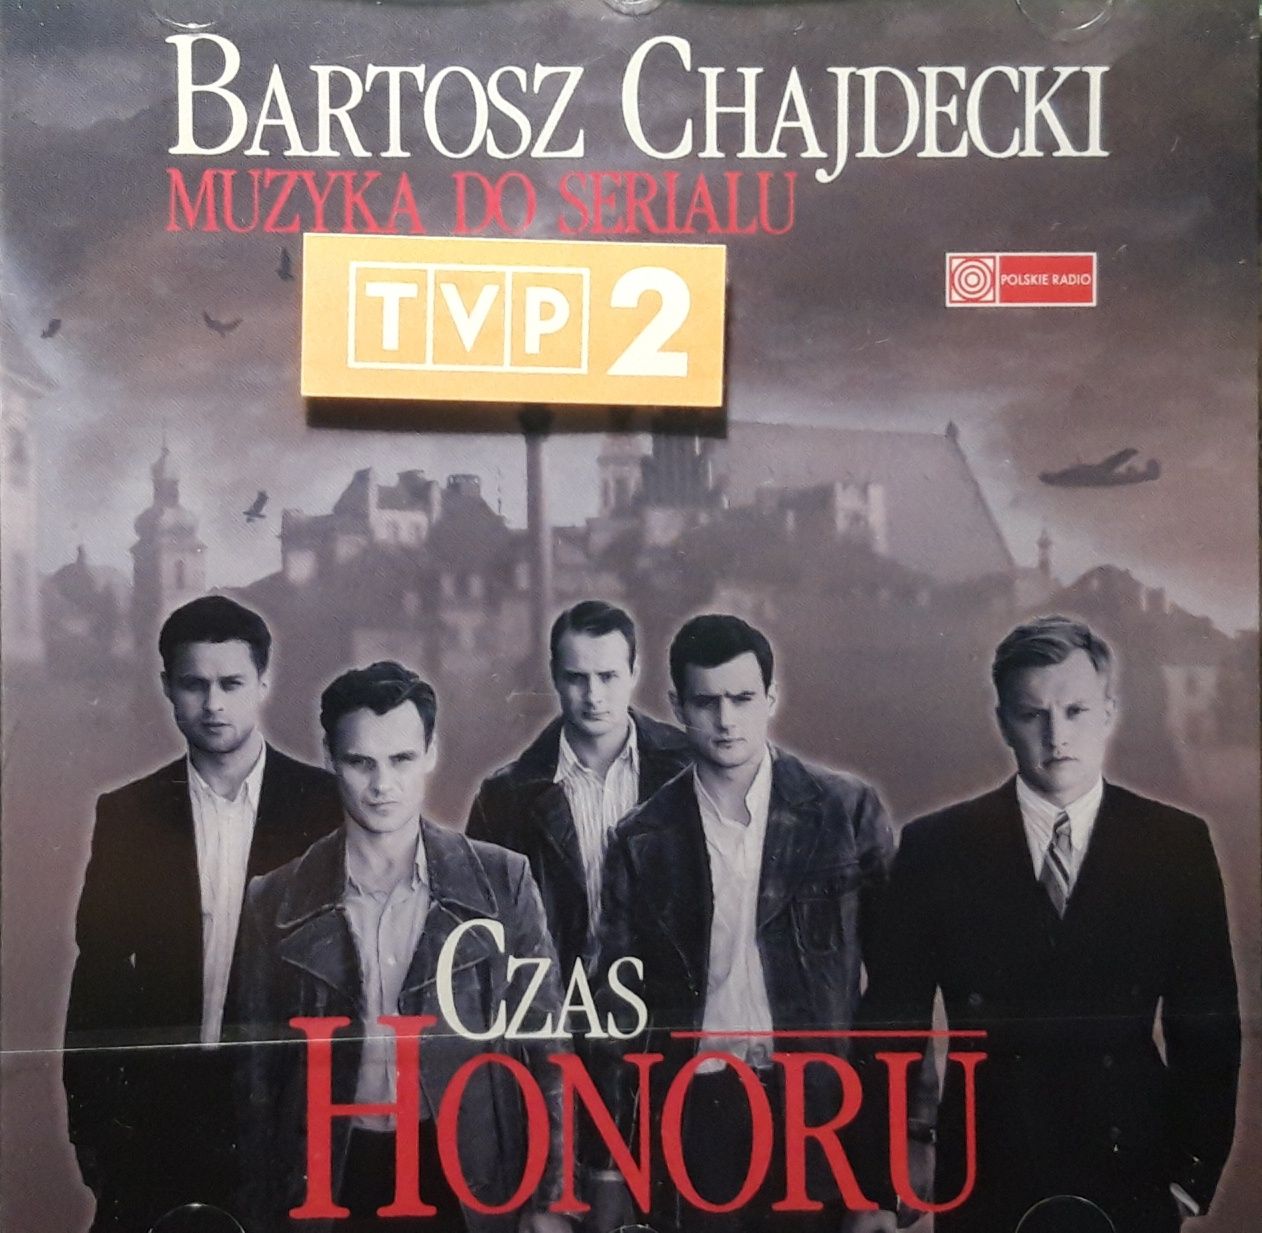 Bartosz Chajdecki – Czas Honoru (Muzyka Do Serialu) CD, 2010, FOLIA